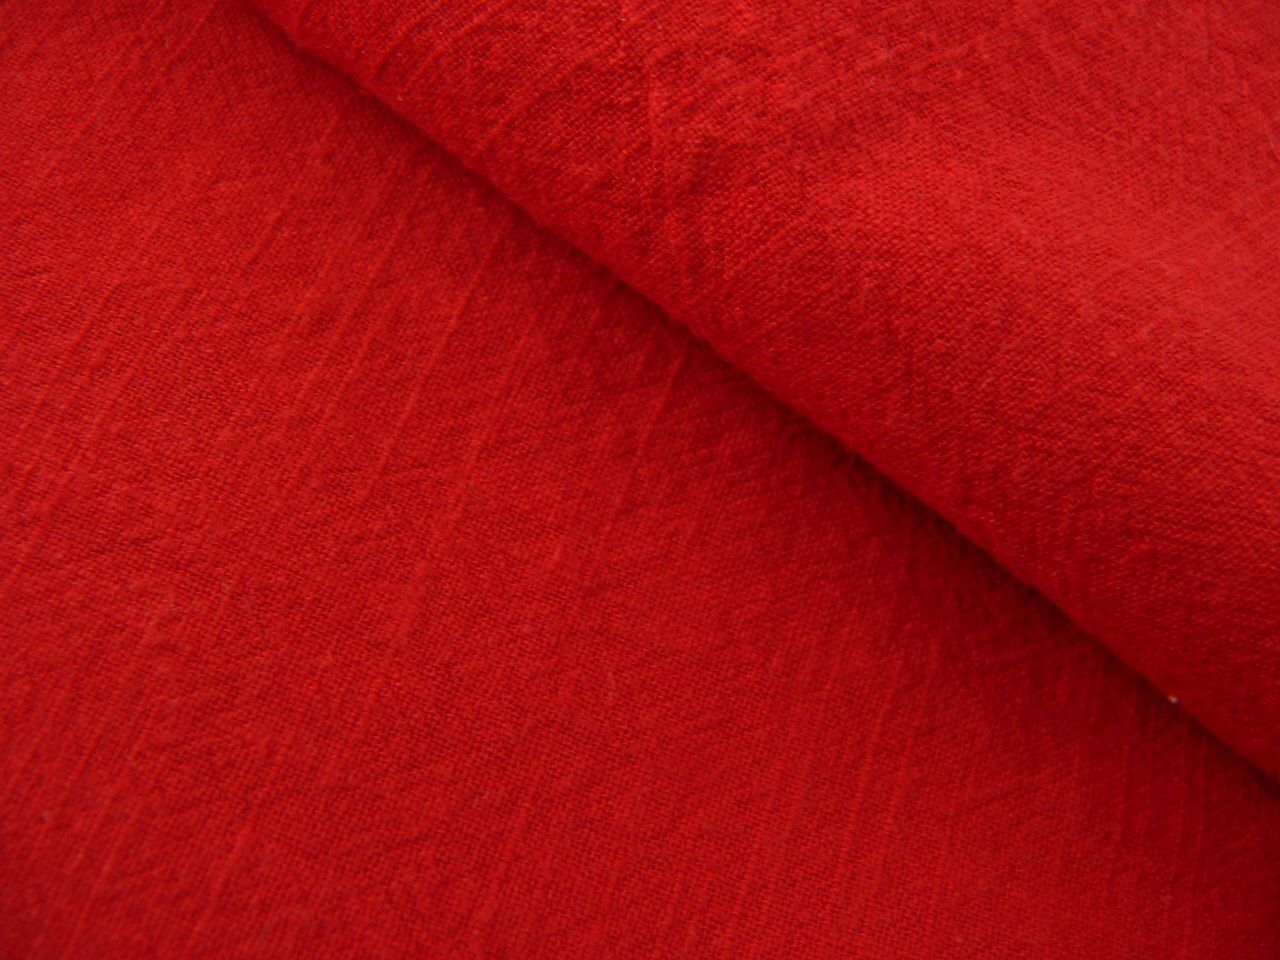 Кумач вый ситц вый. Красная ткань хлопок. Красная хлопковая ткань. Хлопчатобумажная ткань красная. Кумач ткань.